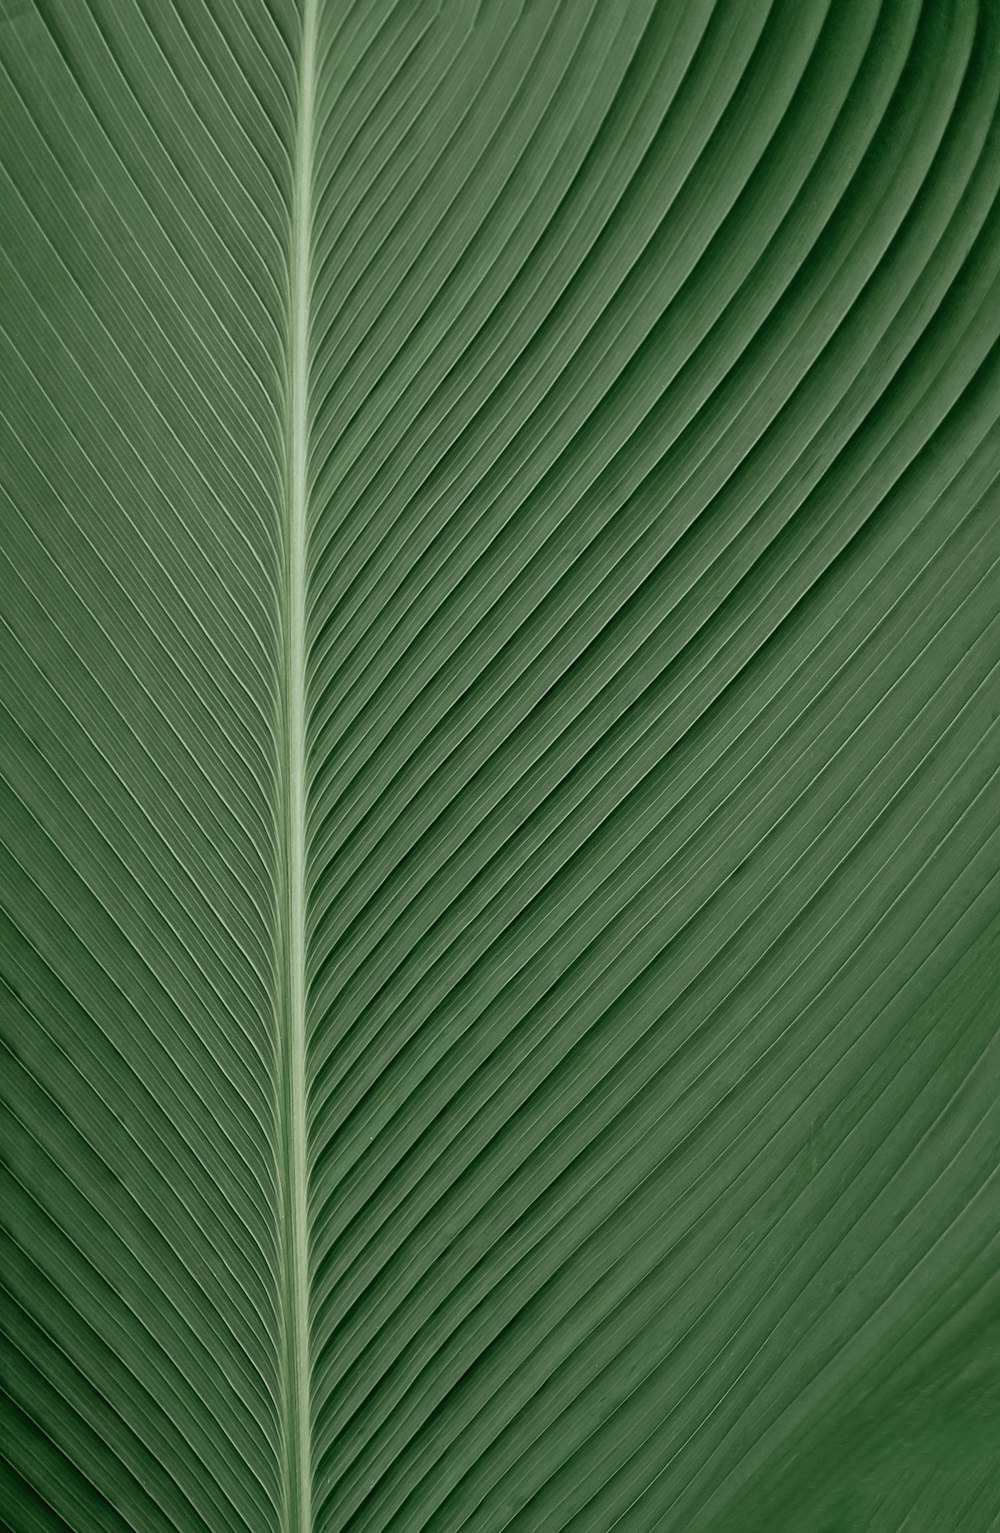 緑と白の縞模様のテキスタイル